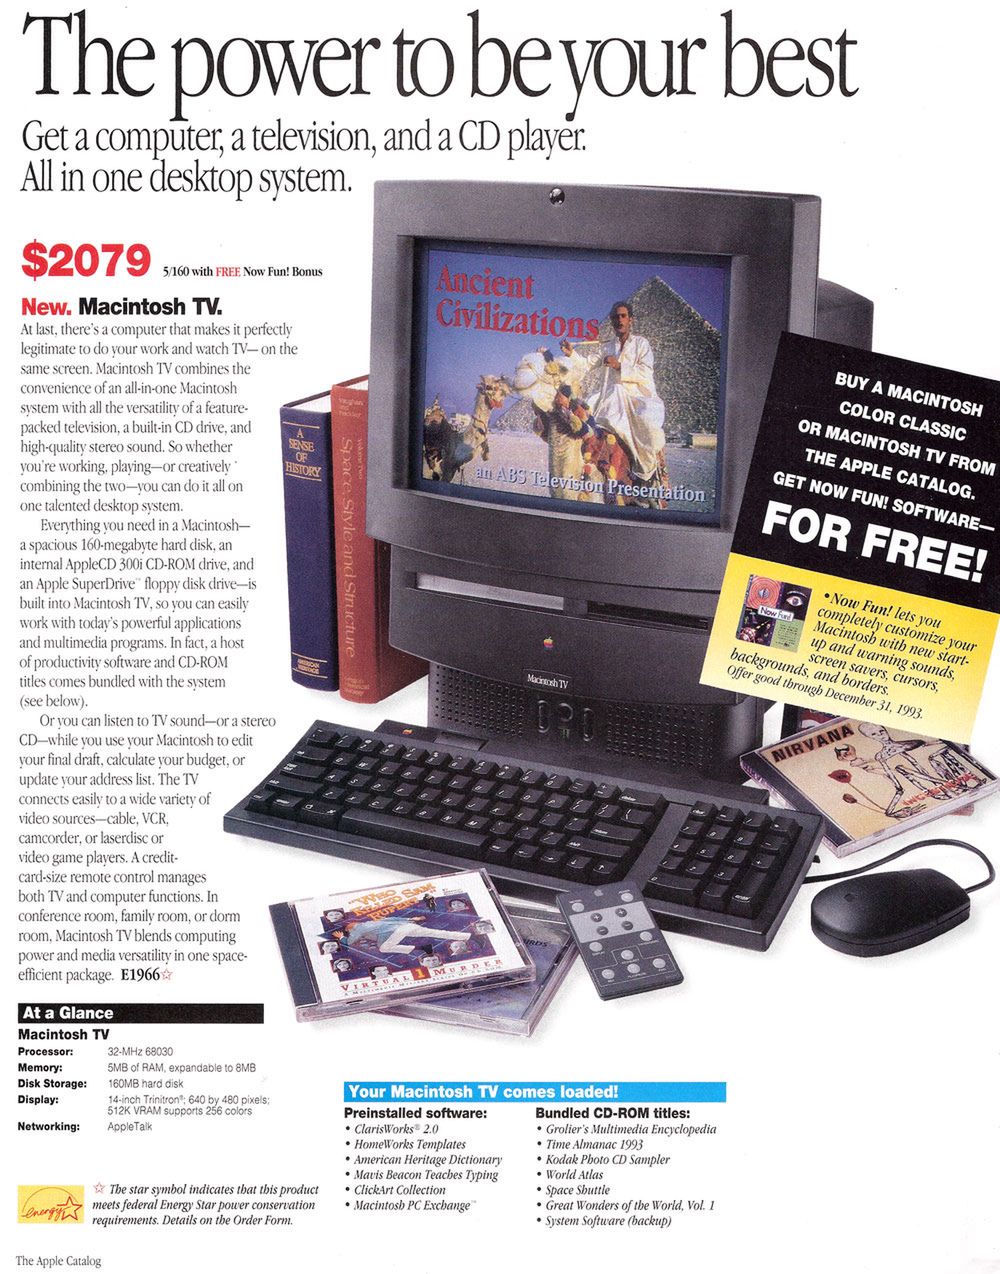 Macintosh TV to pierwszy komputer Apple umożliwiający oglądanie telewizji. Jego premiera miała miejsce 23 stycznia 1993 roku.